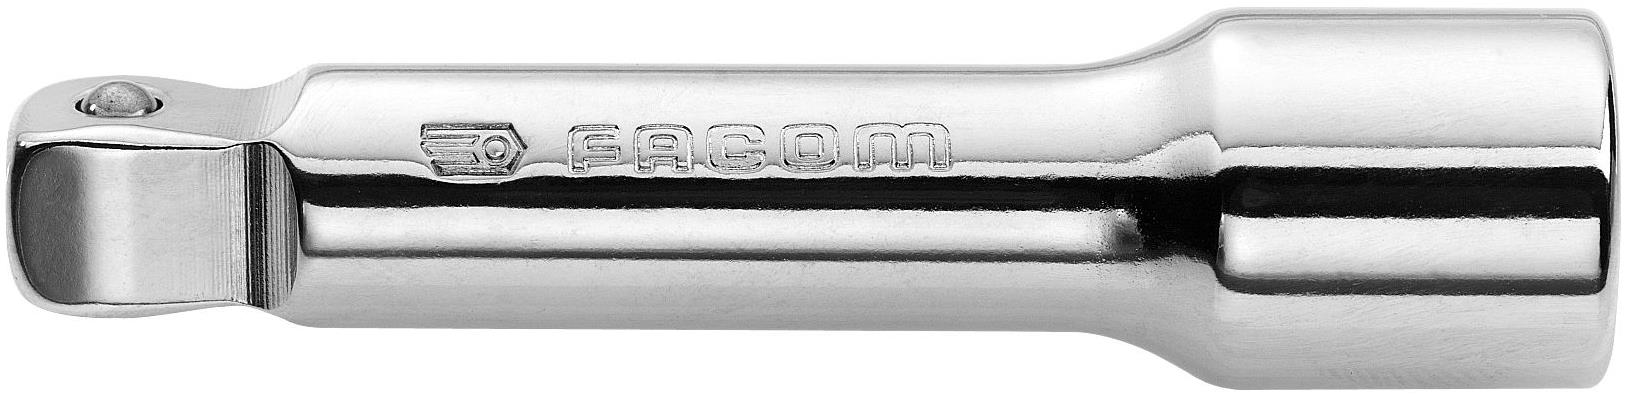 Facom J.210S Rallonge 3/8 Angulaire 125Mm 